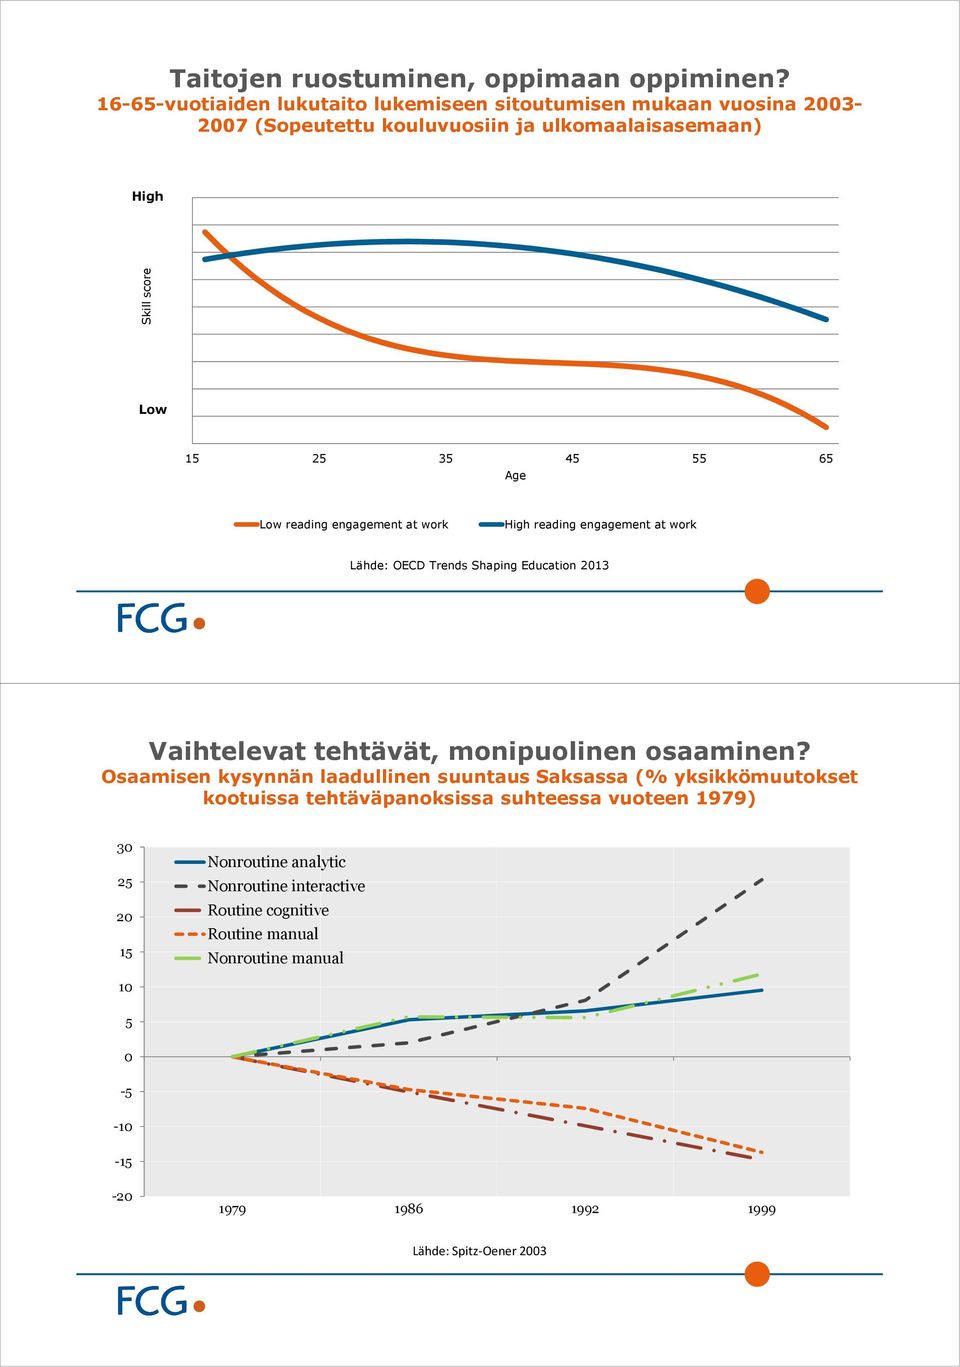 Age Low reading engagement at work High reading engagement at work Lähde: OECD Trends Shaping Education 2013 Vaihtelevat tehtävät, monipuolinen osaaminen?